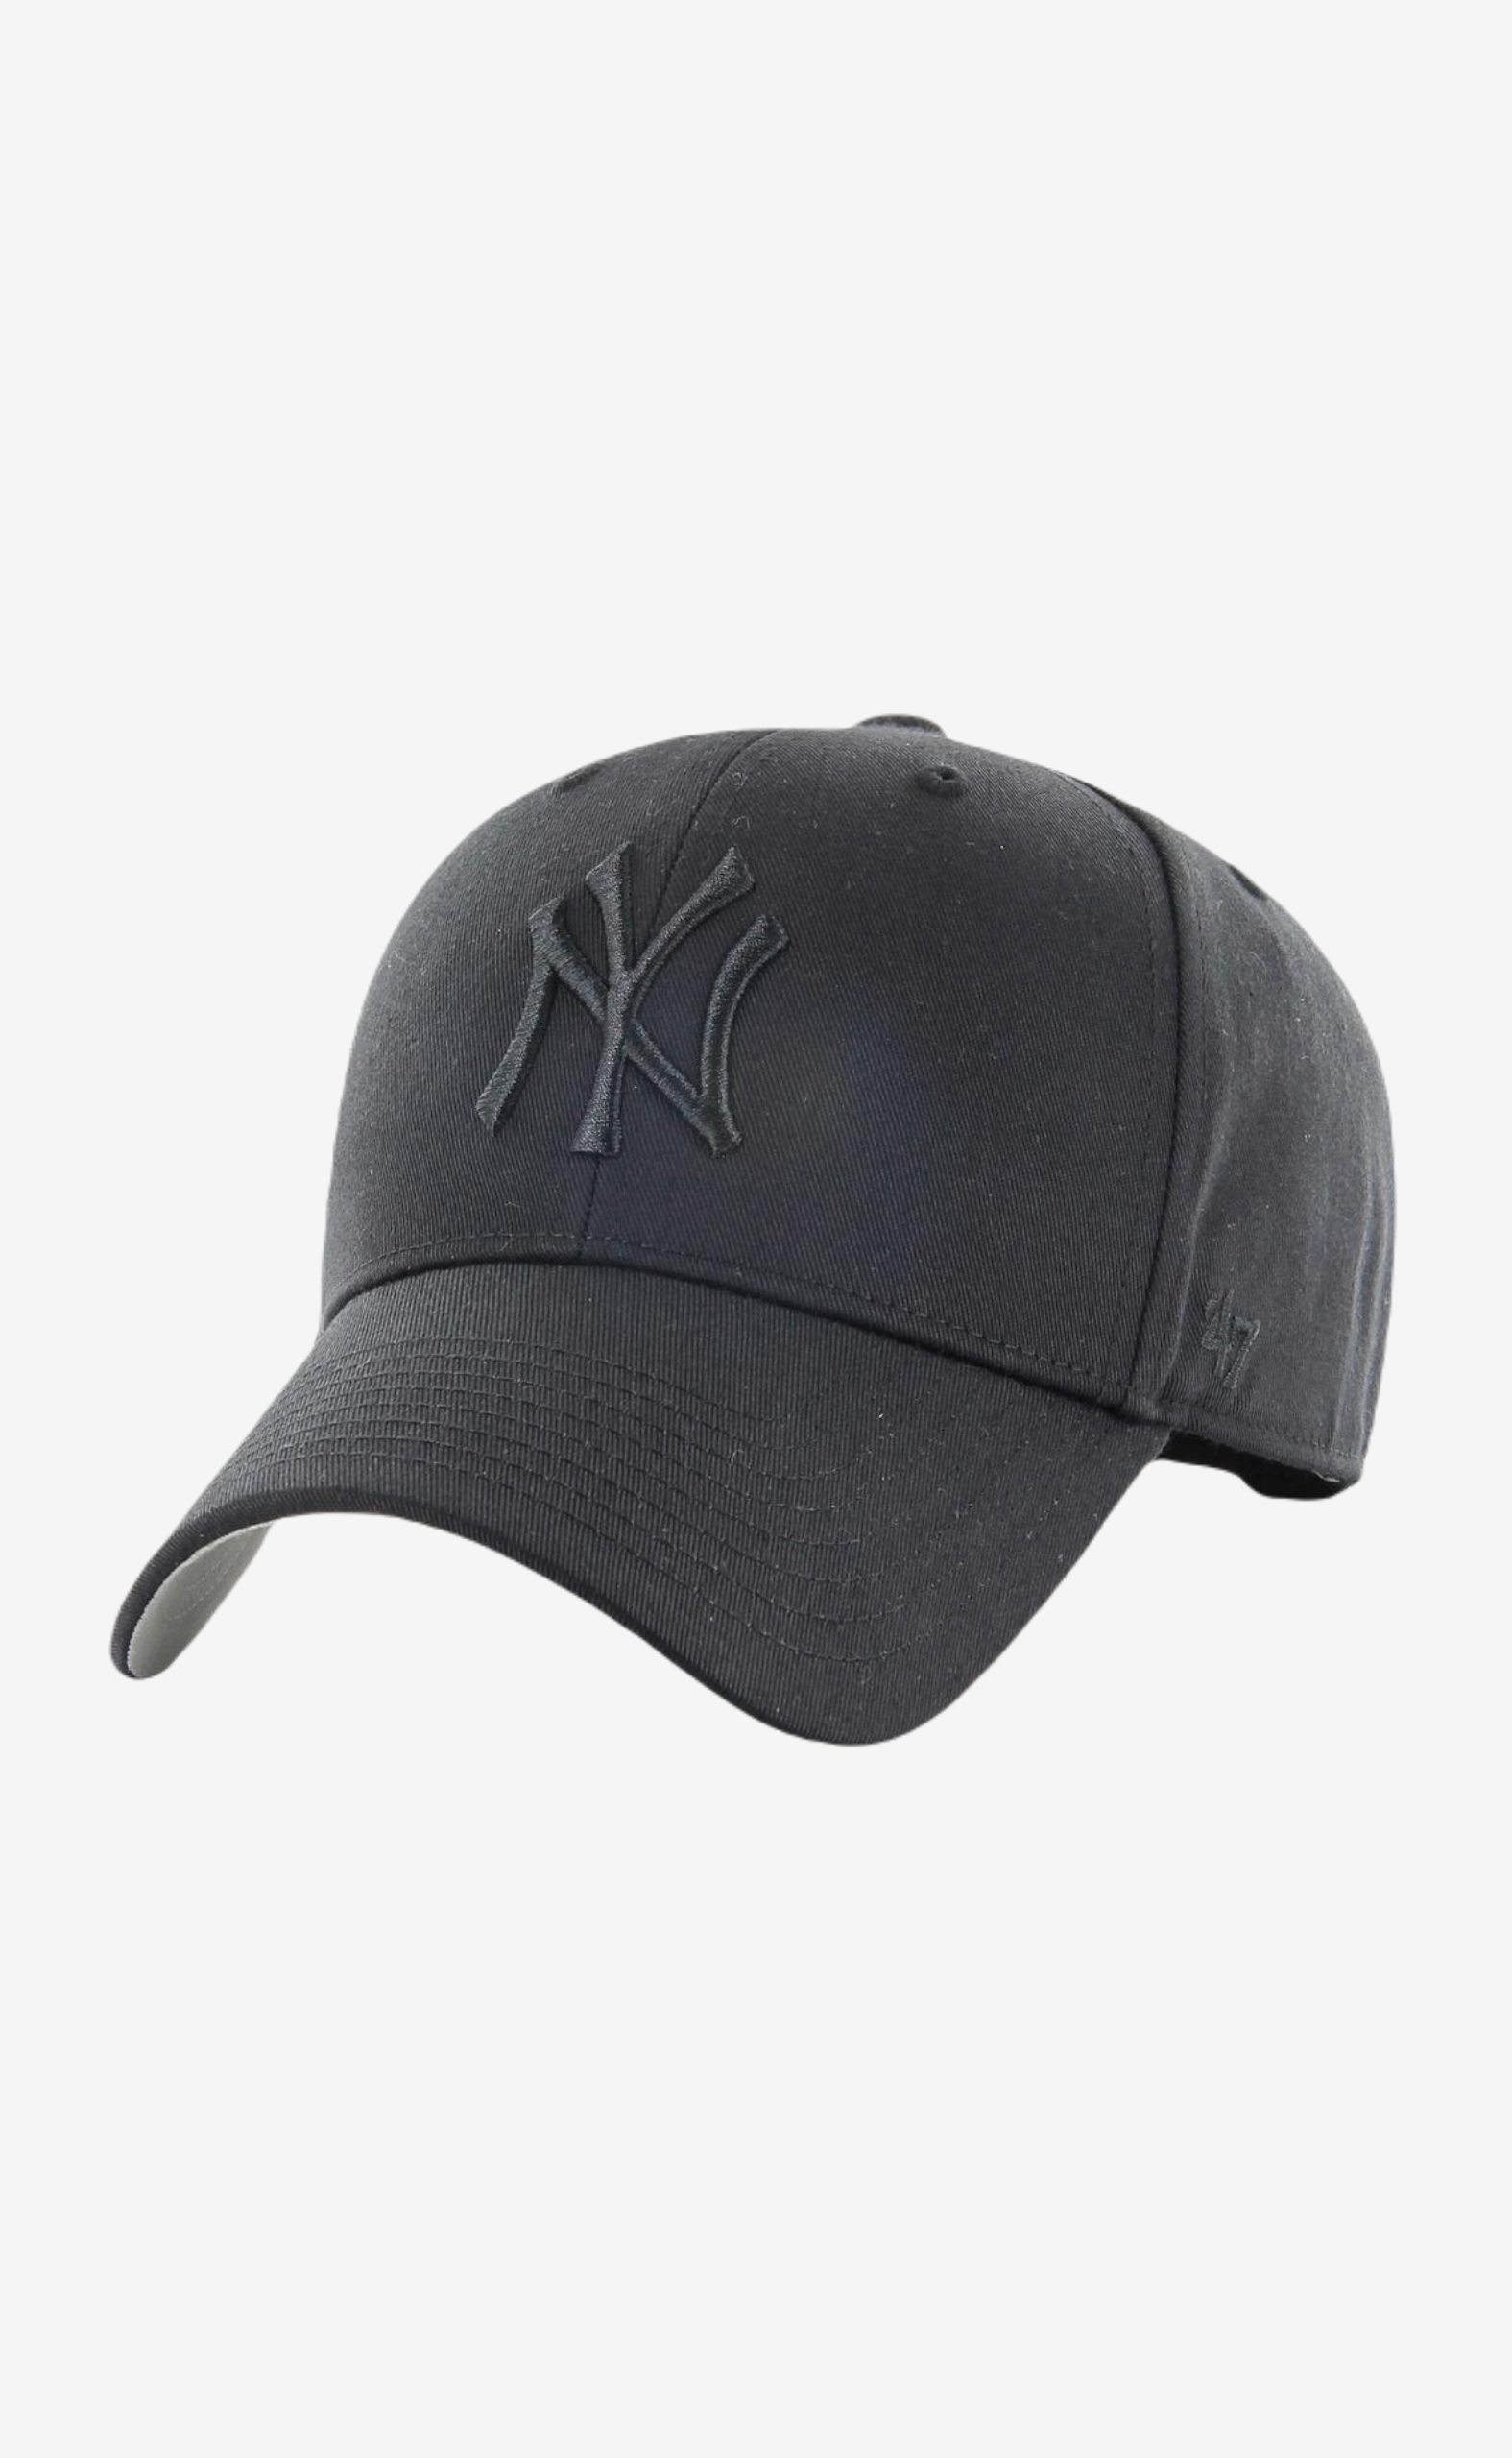 MLB NEW YORK YANKEES RAISED BASIC 47 MVP BLACK HAT